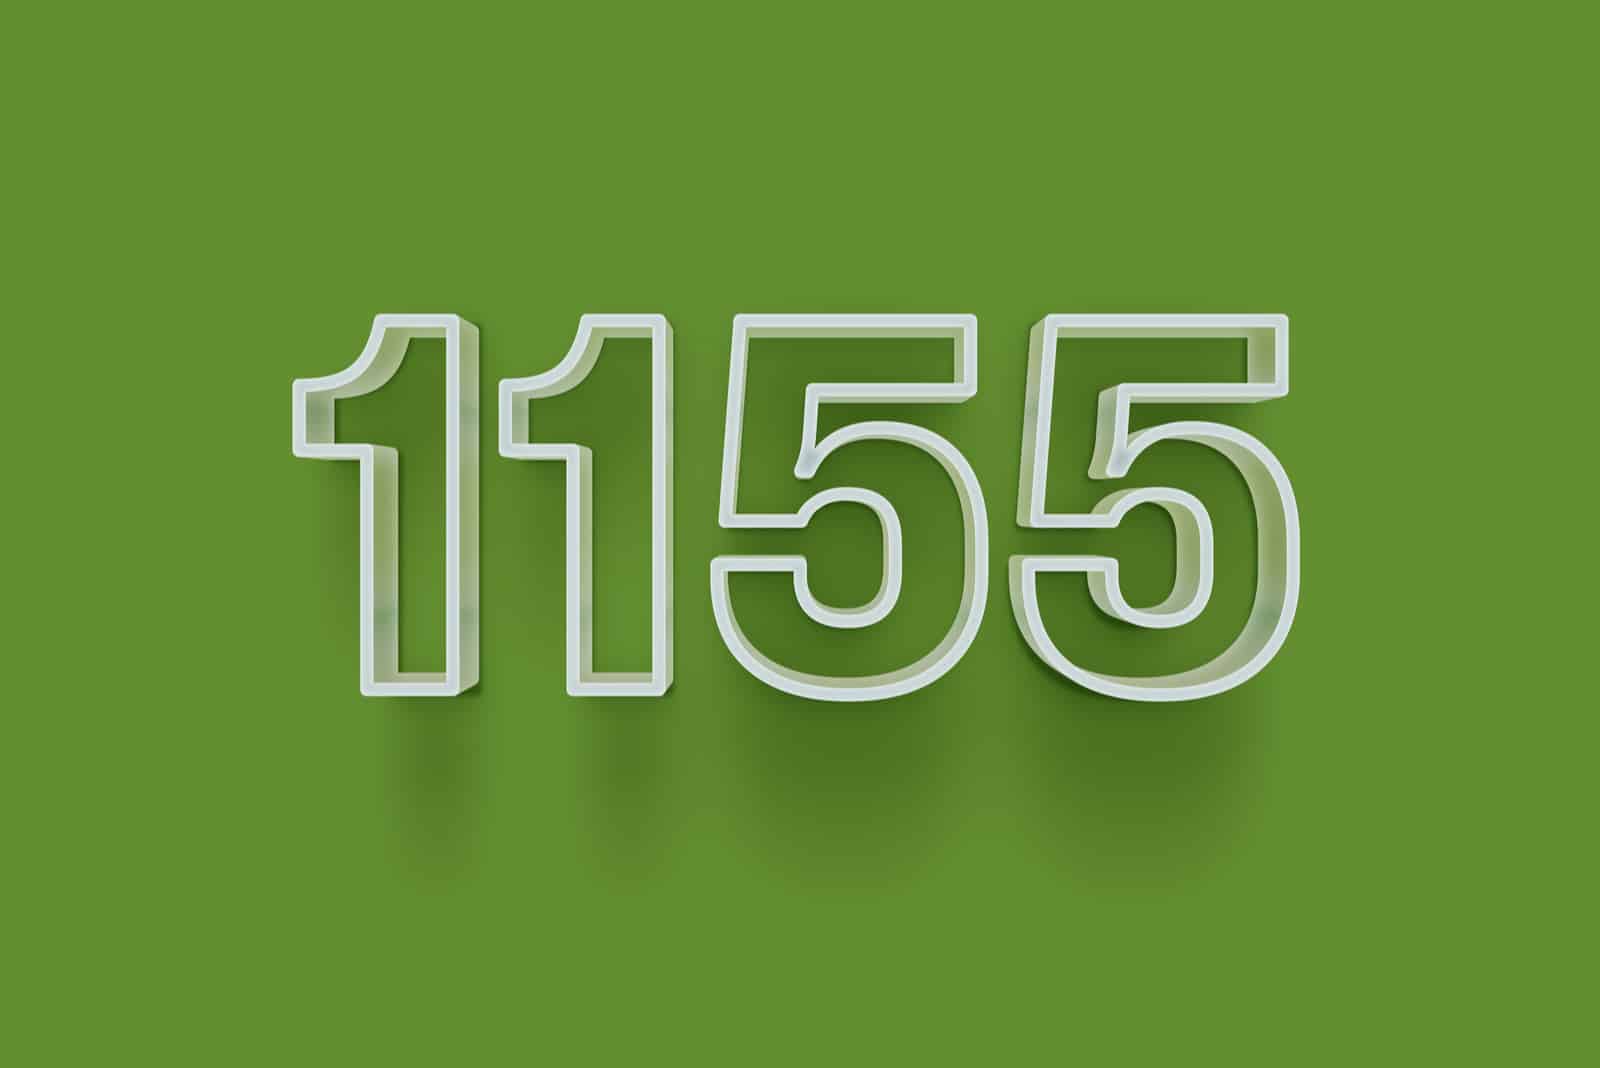 Nummer 1155 auf dem grünen Hintergrund